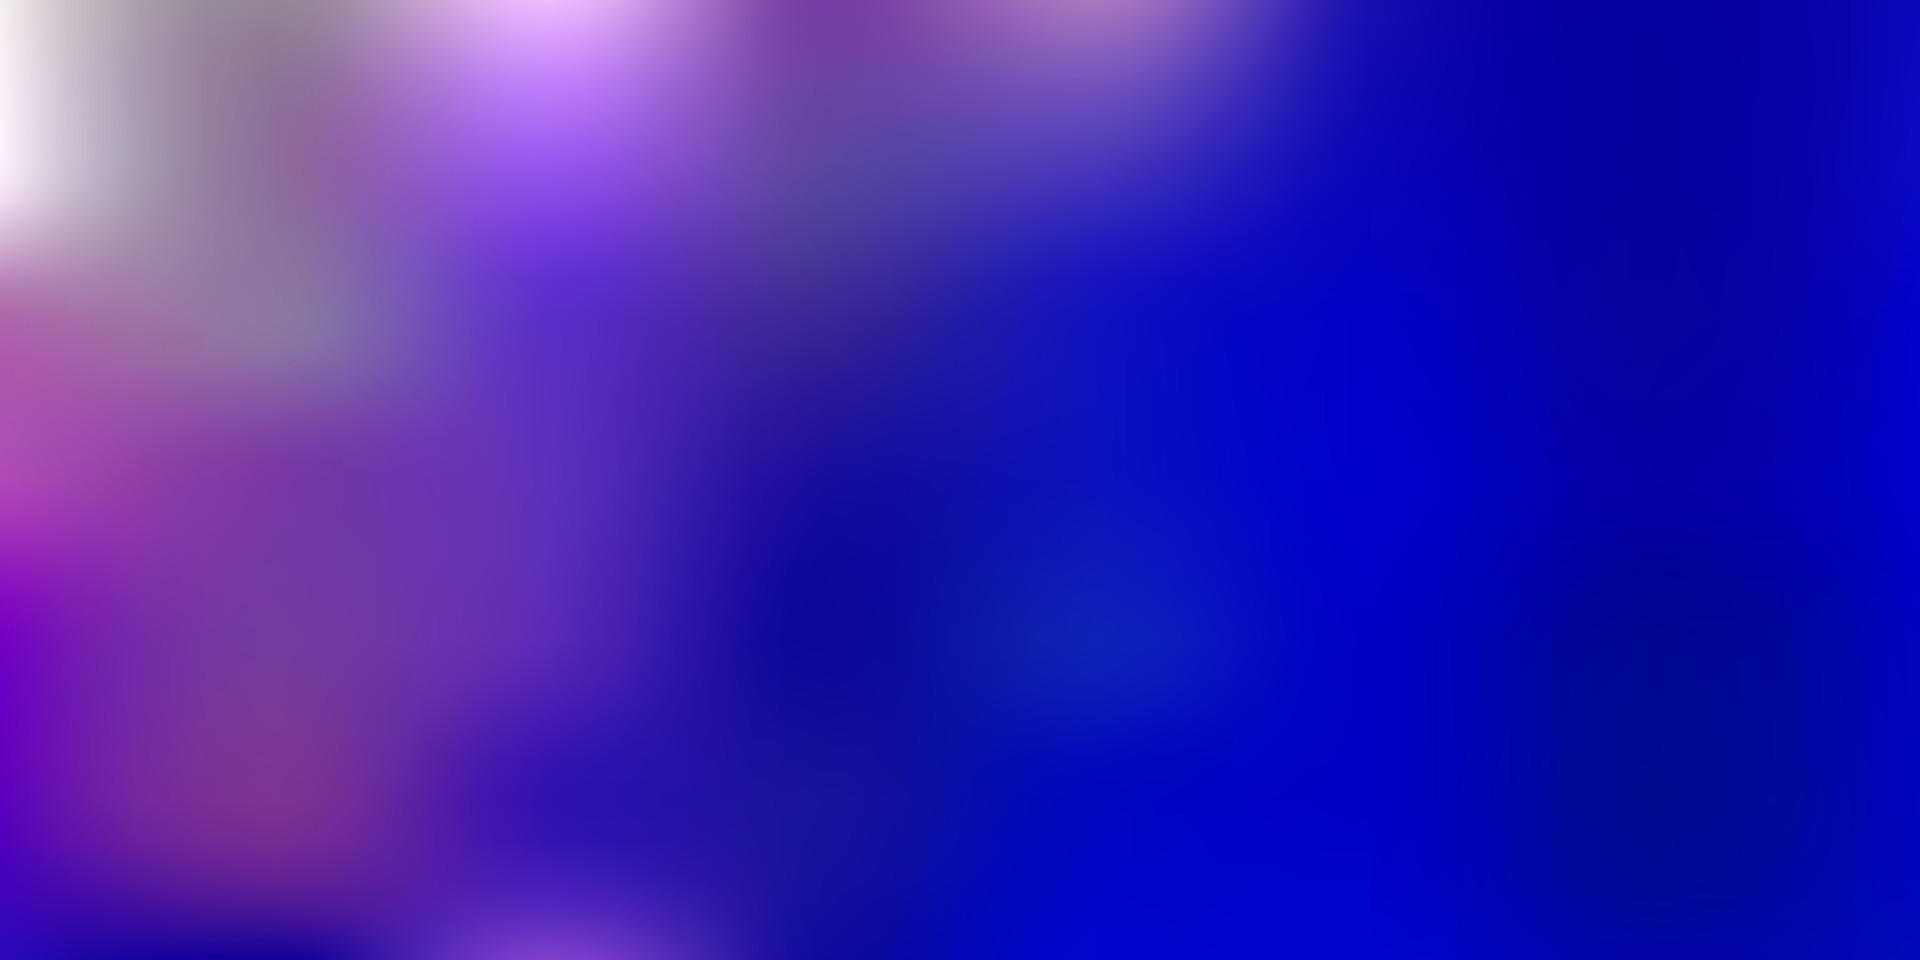 ljusrosa, blå vektor oskärpa bakgrund.